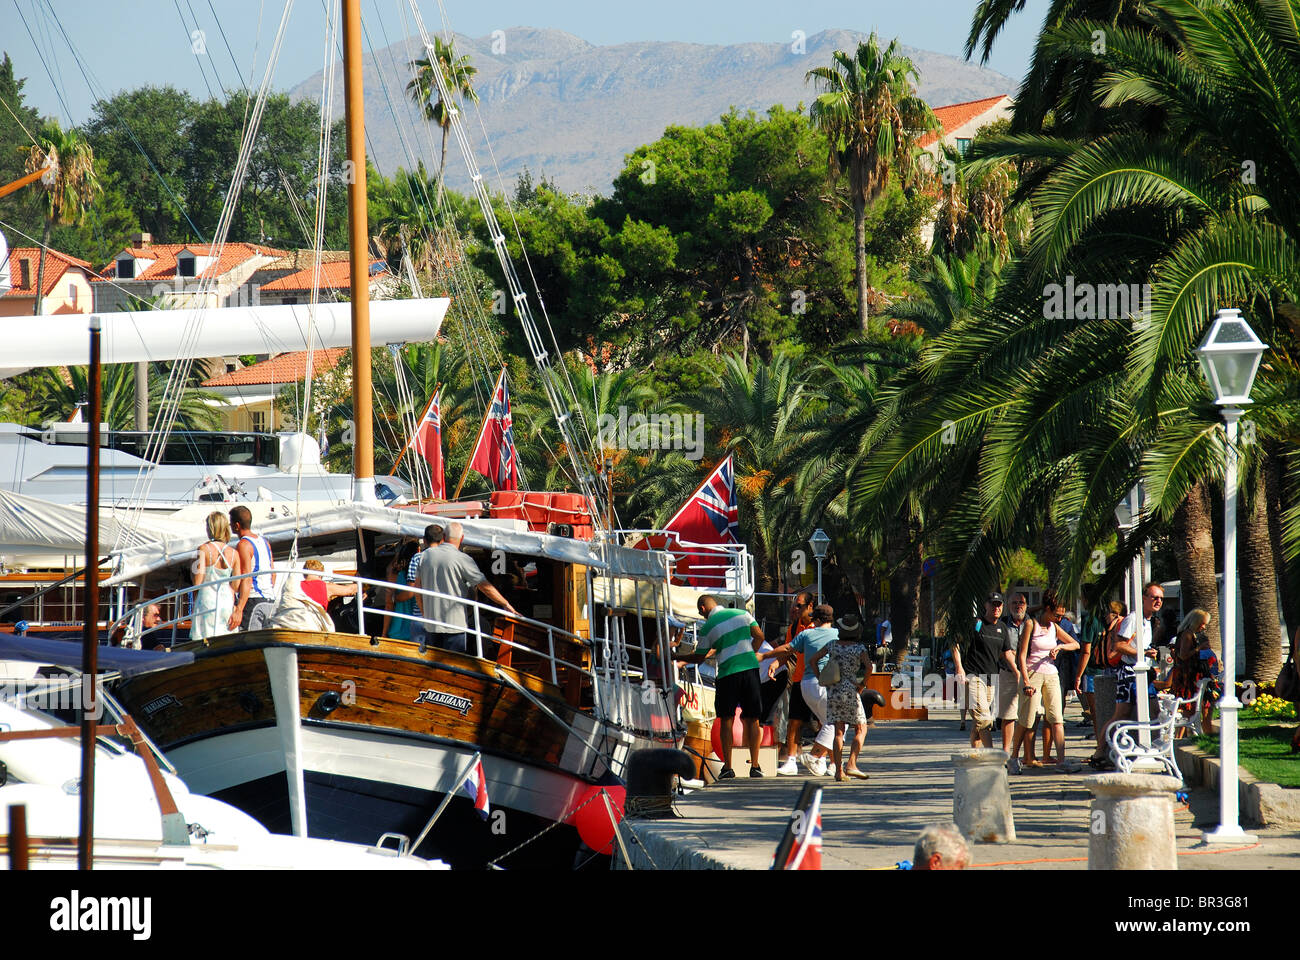 CAVTAT, vicino a Dubrovnik, Croazia. La vista del porto con i turisti che arrivano in barca da Dubrovnik. Foto Stock